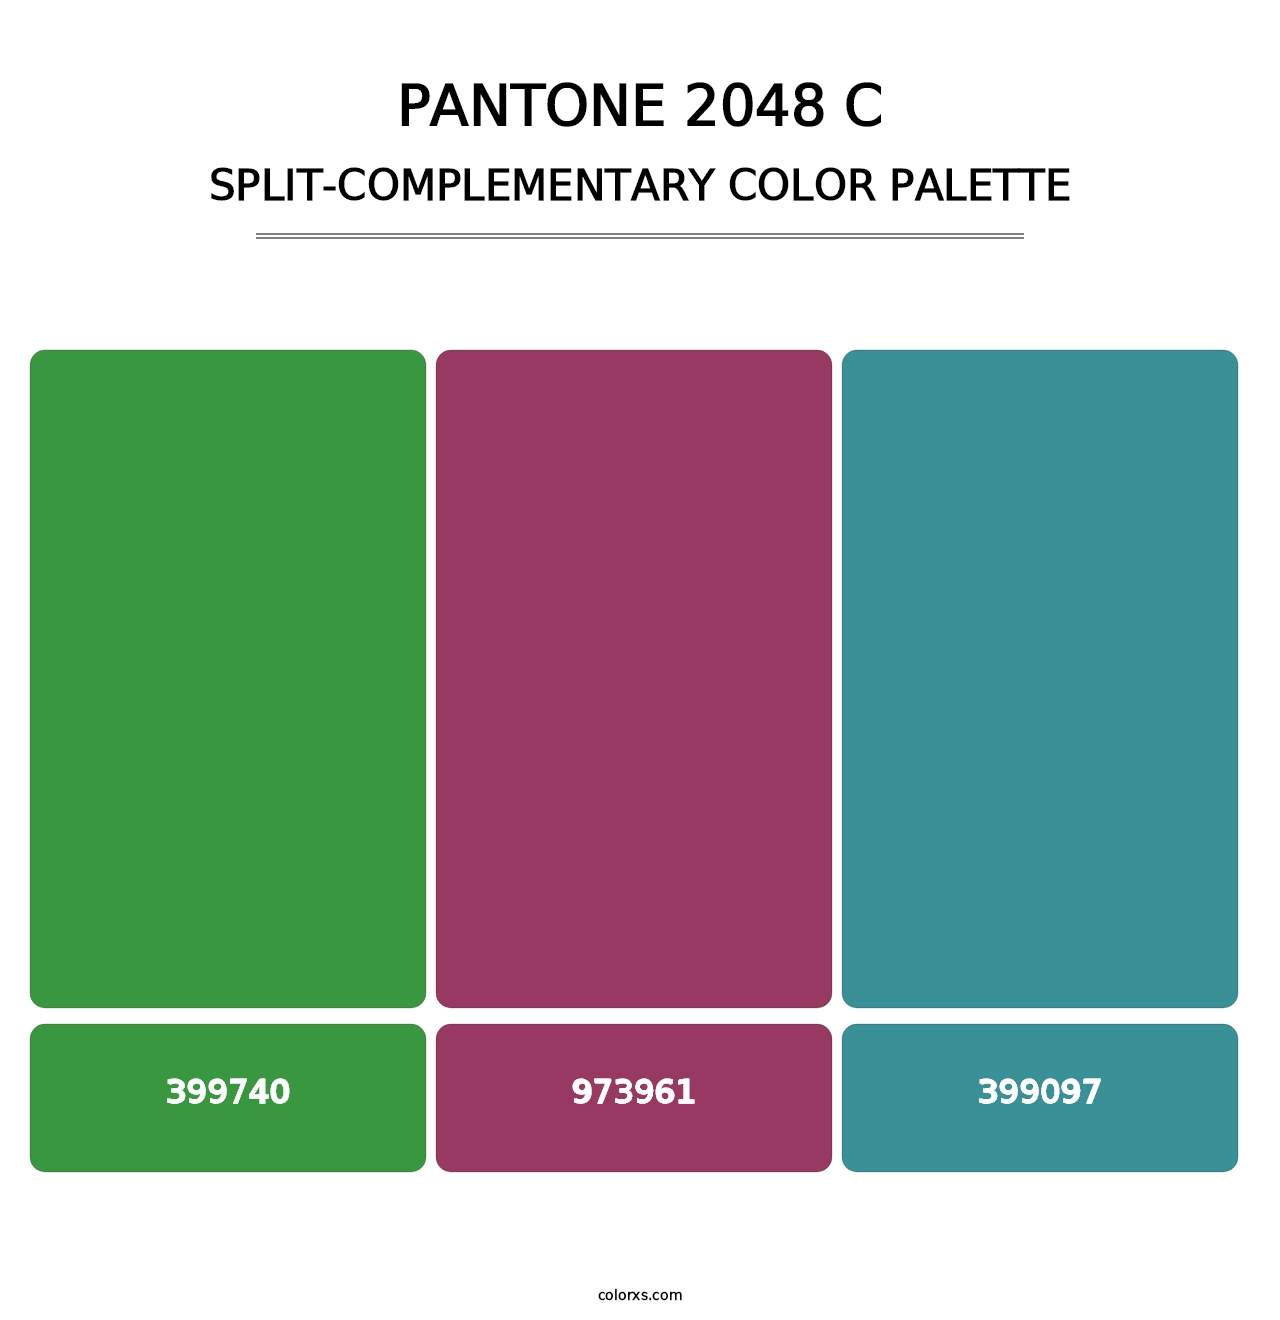 PANTONE 2048 C - Split-Complementary Color Palette